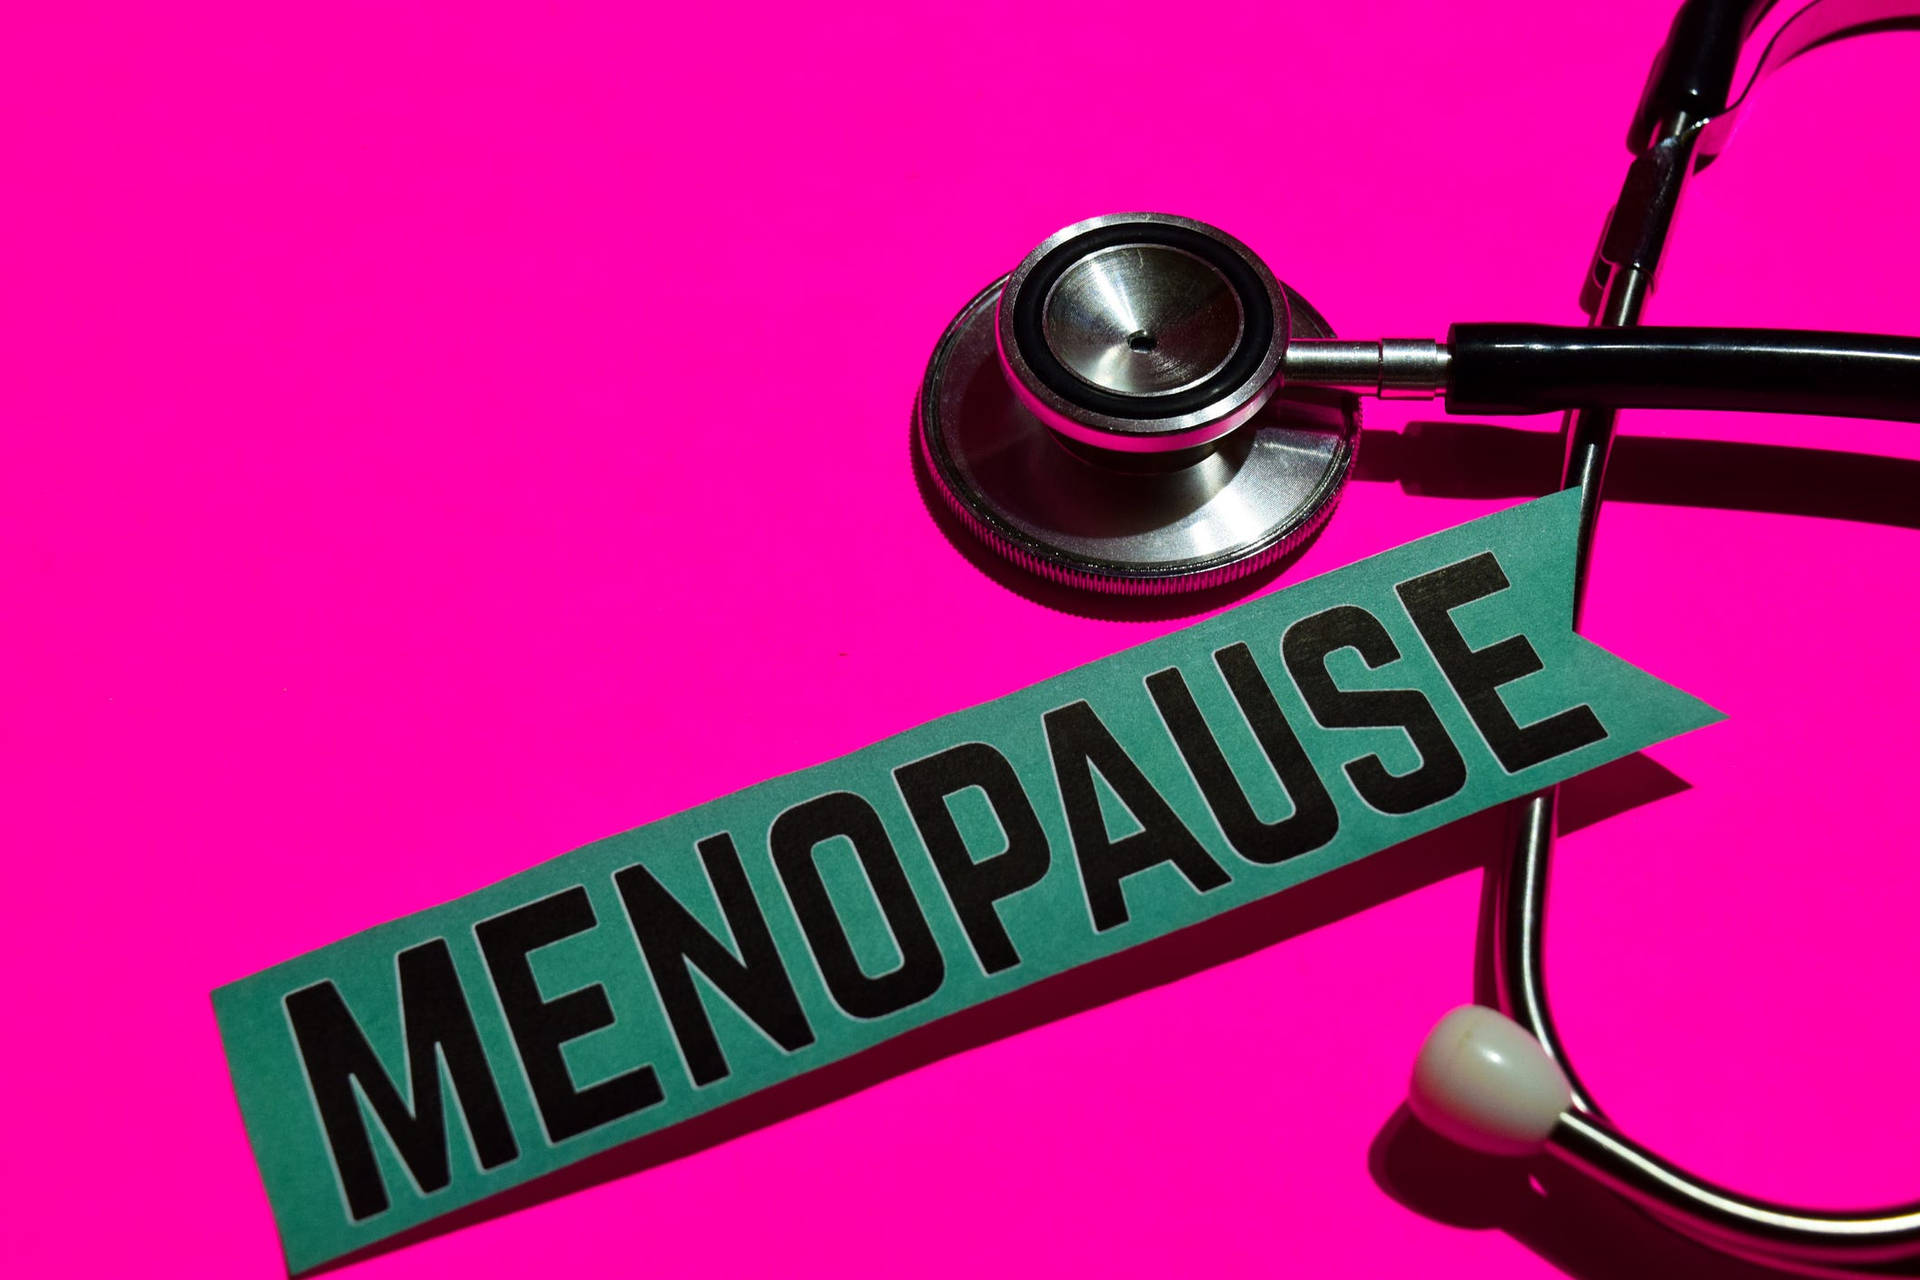 Stethoskopmit Menopause-hinweis Wallpaper